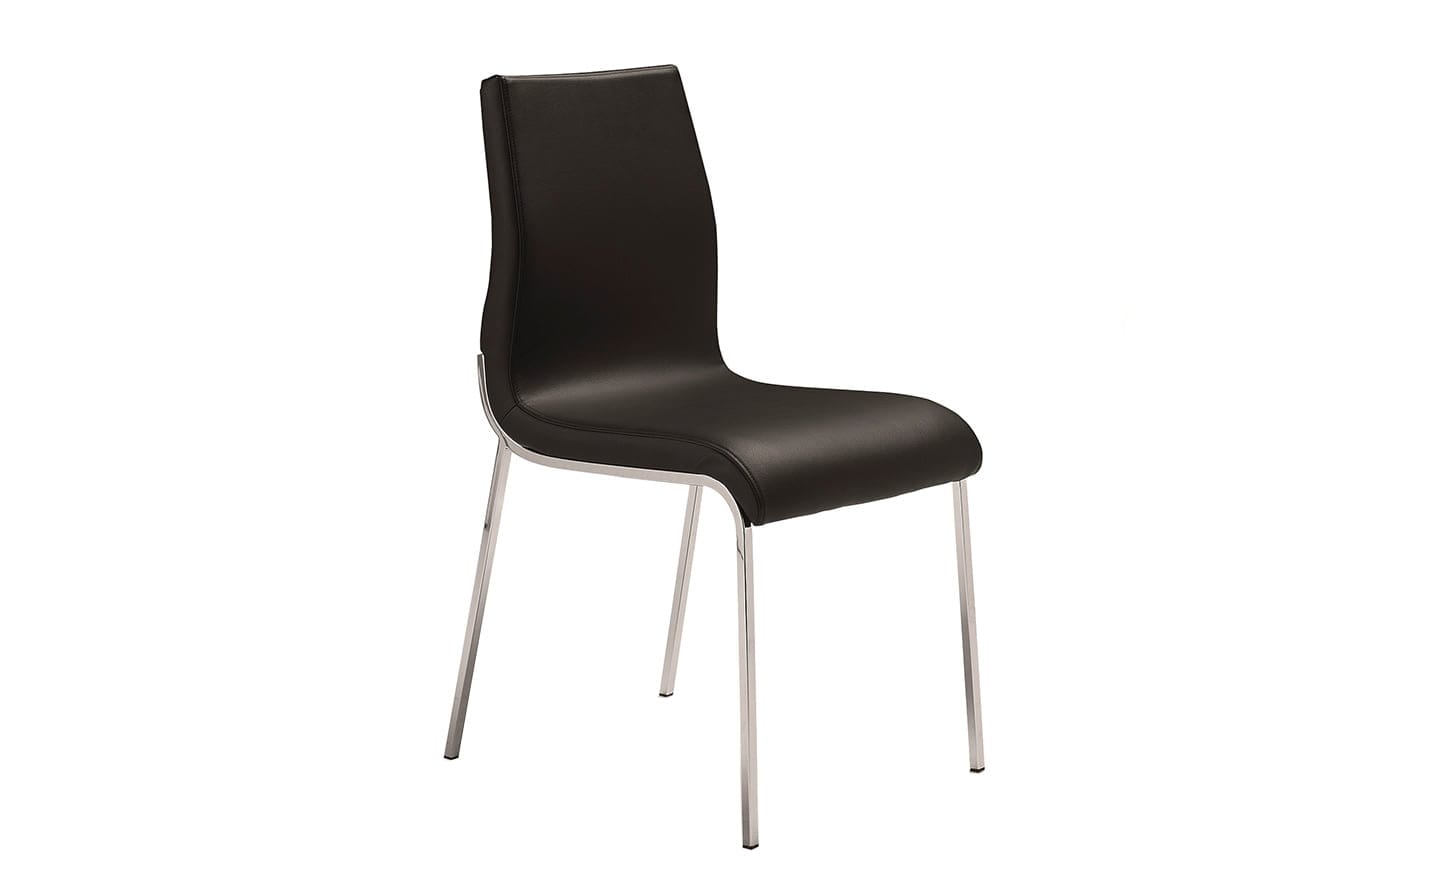 Cadeira Enjoy 4052 – Cadeira de Metal Estofada Moderna | Moveistore